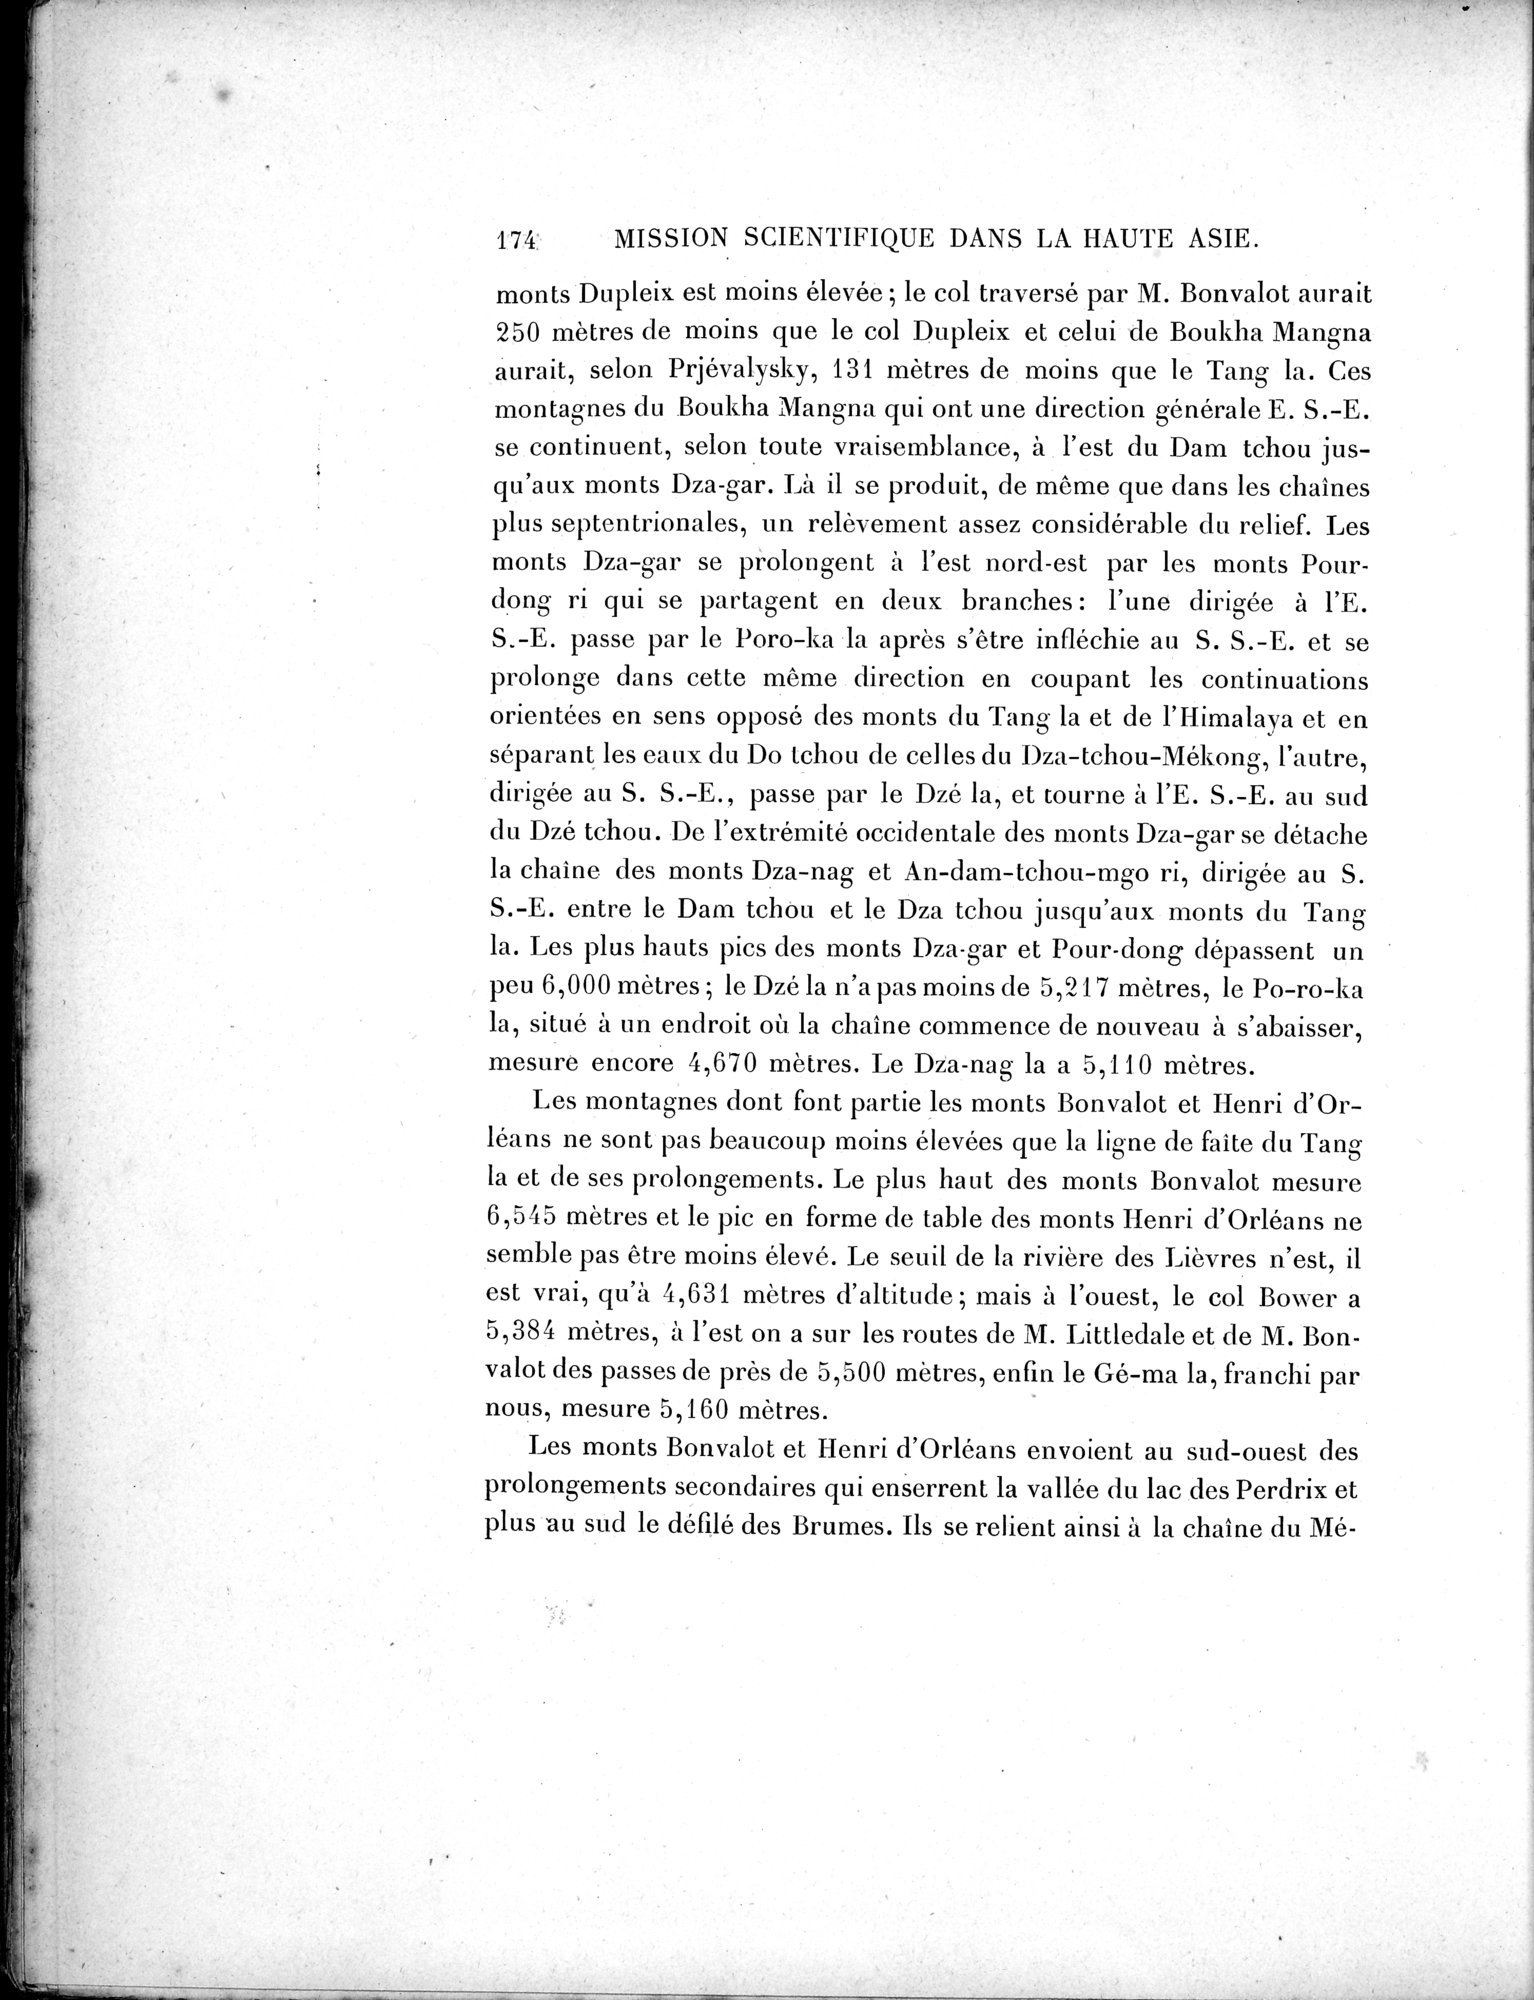 Mission Scientifique dans la Haute Asie 1890-1895 : vol.3 / Page 192 (Grayscale High Resolution Image)